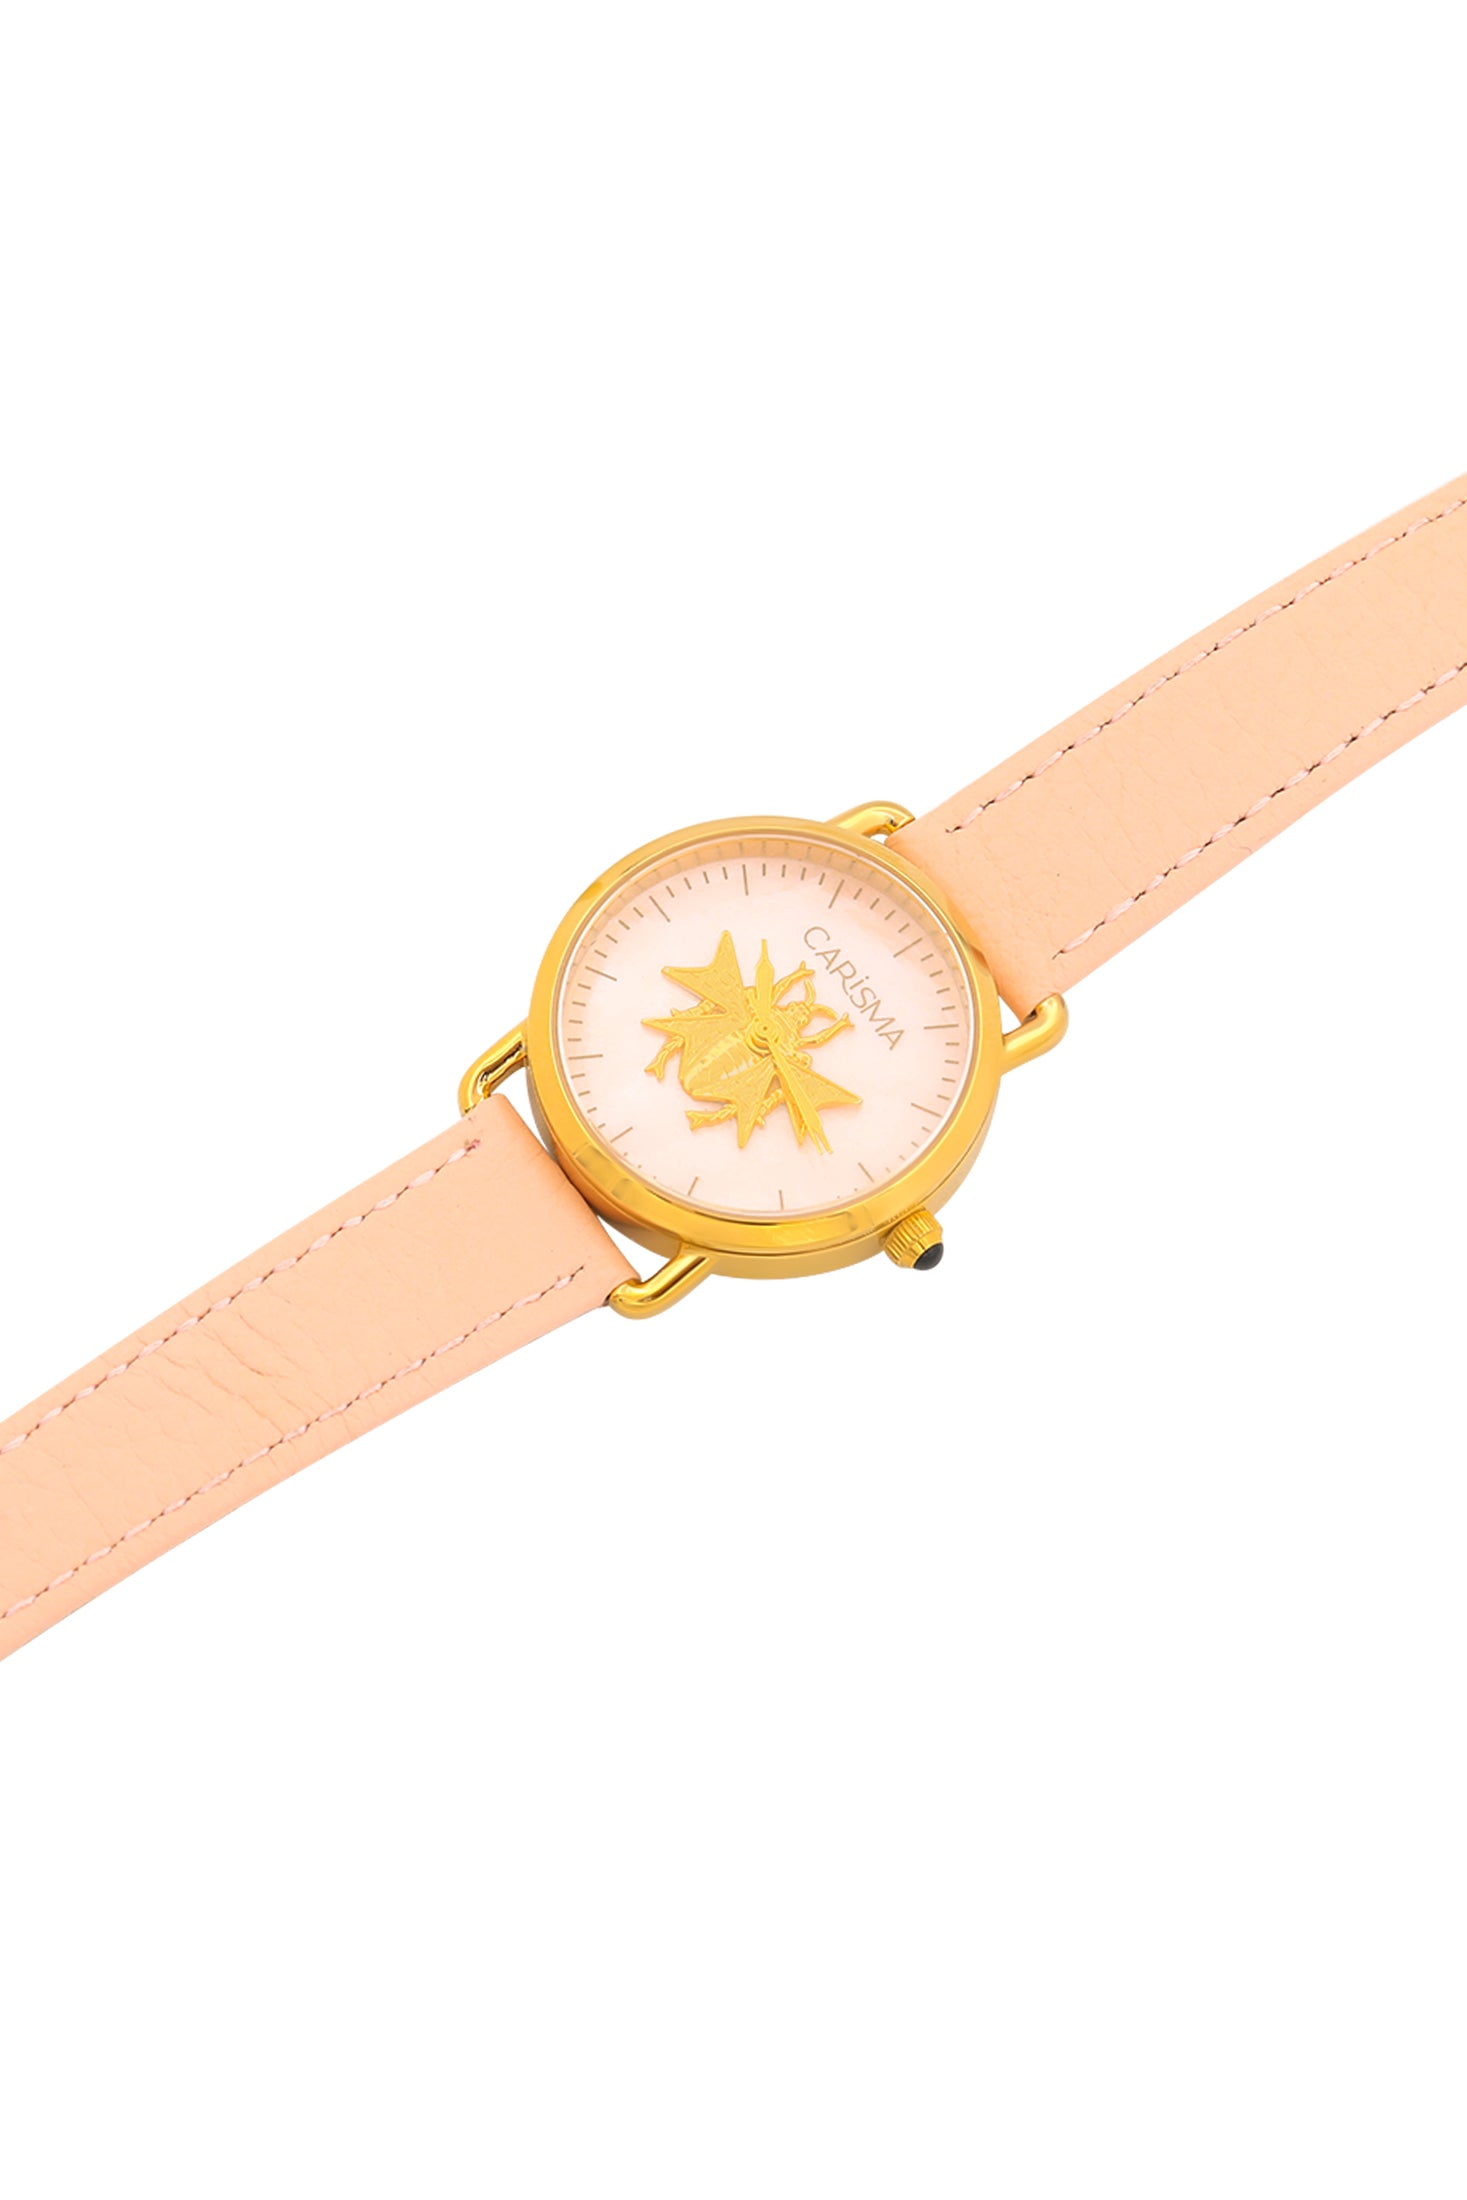 The Carisma Pink Reġina Watch